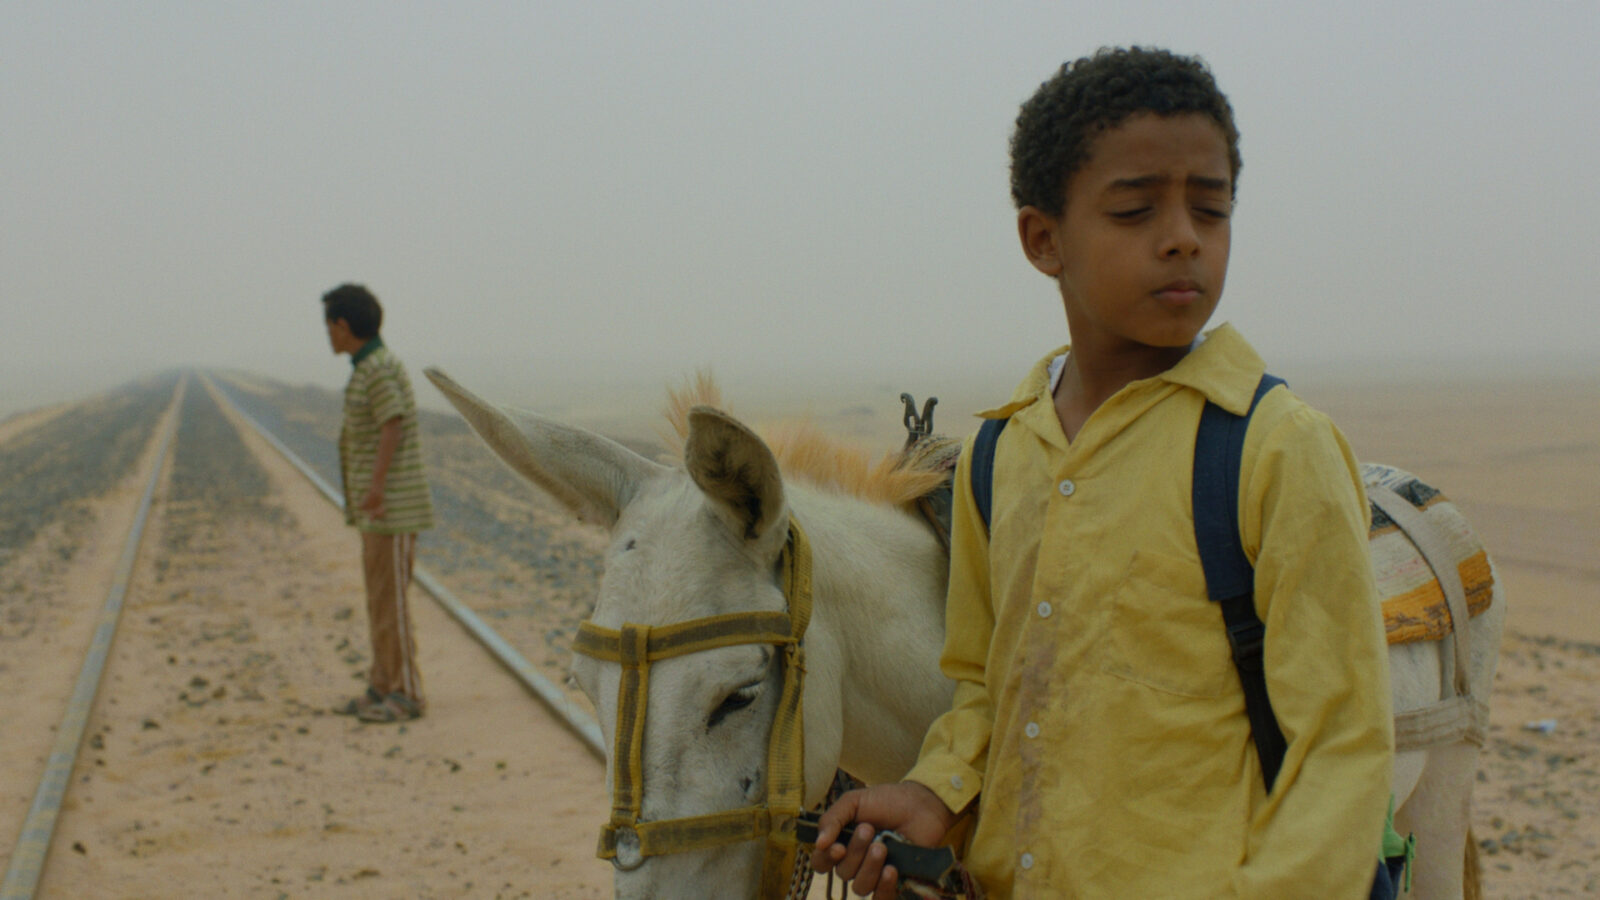 Filmstill aus dem Film Yomeddine. Im Vordergrund steht ein Junge mit einem Esel an der Hand auf einer Bahnschiene. Im Hintergrund steht eine Mann ebenfalls auf der Bahnschine, auf der viel Sand liegt.